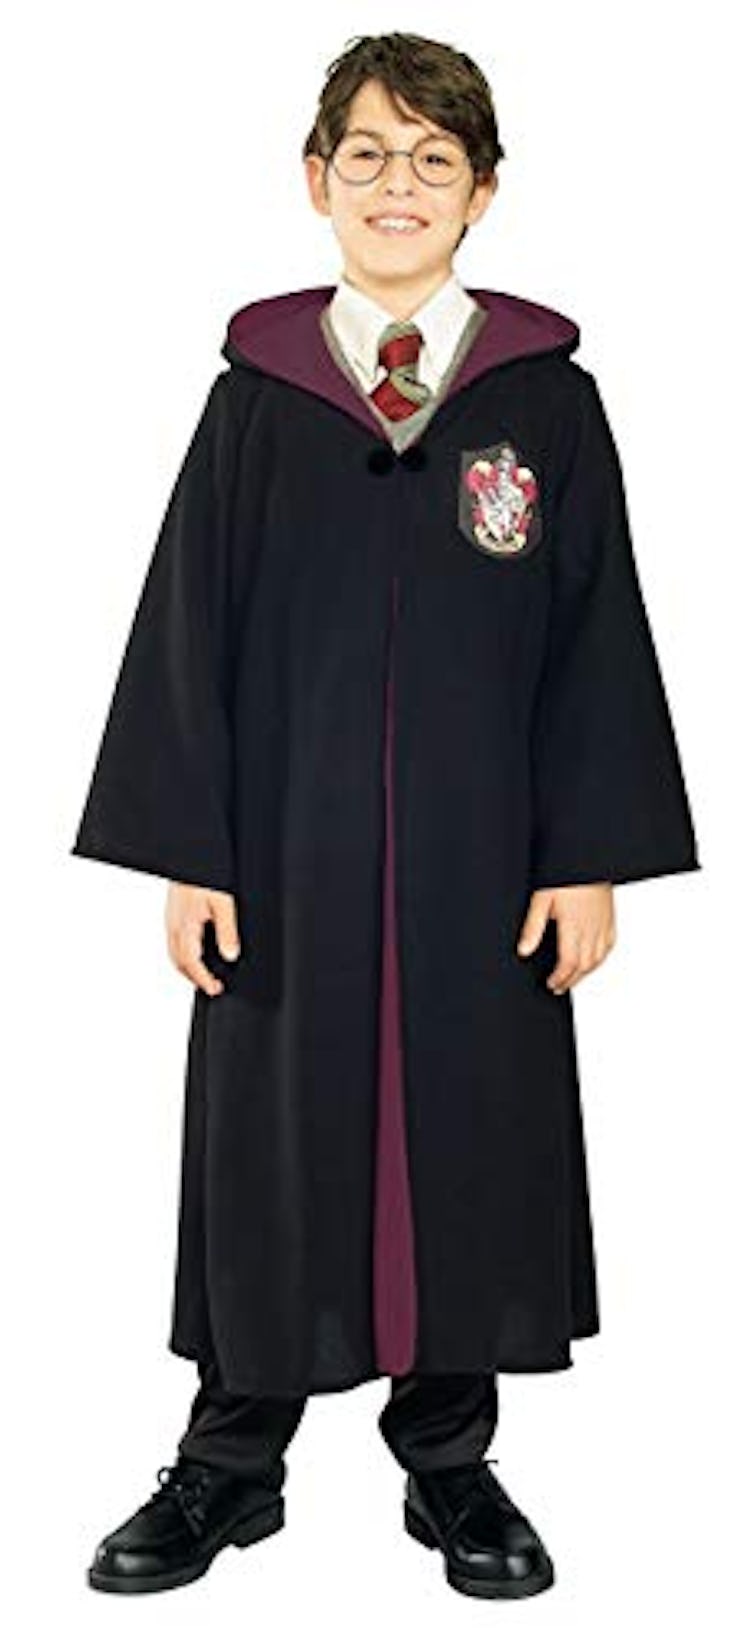 Harry Potter Gryffindor Costume